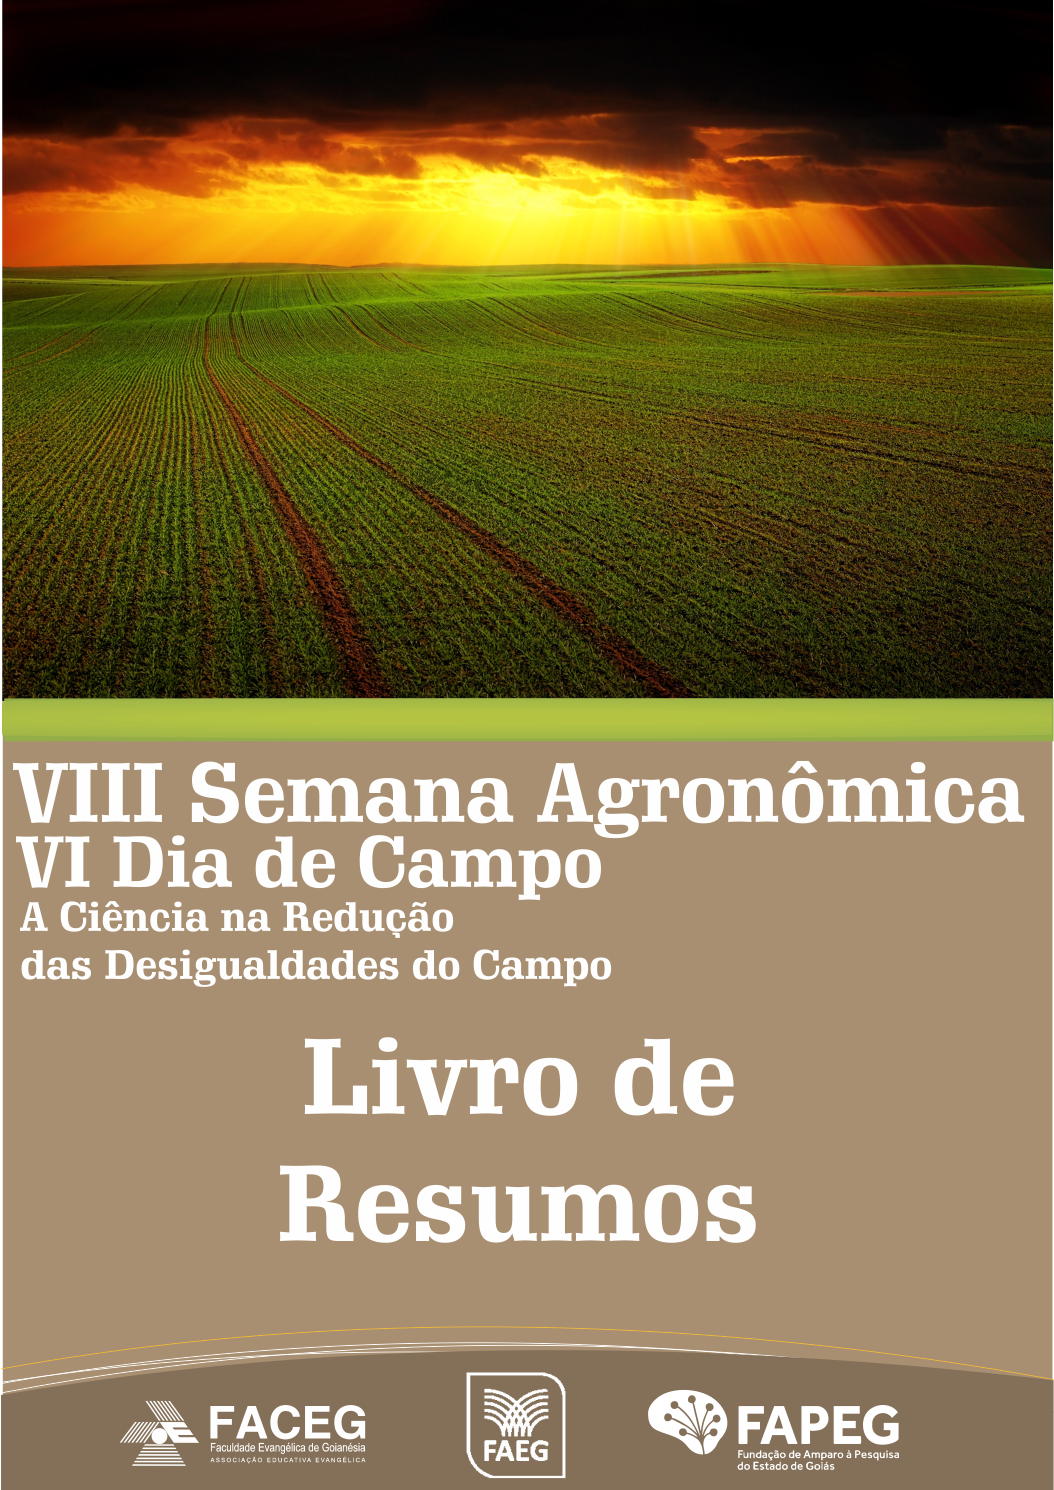 					Visualizar v. 8 n. 2018 (1): VIII Semana Agronômica - A Ciência na Redução das Desigualdades do Campo - ISSN: 2595-6914
				